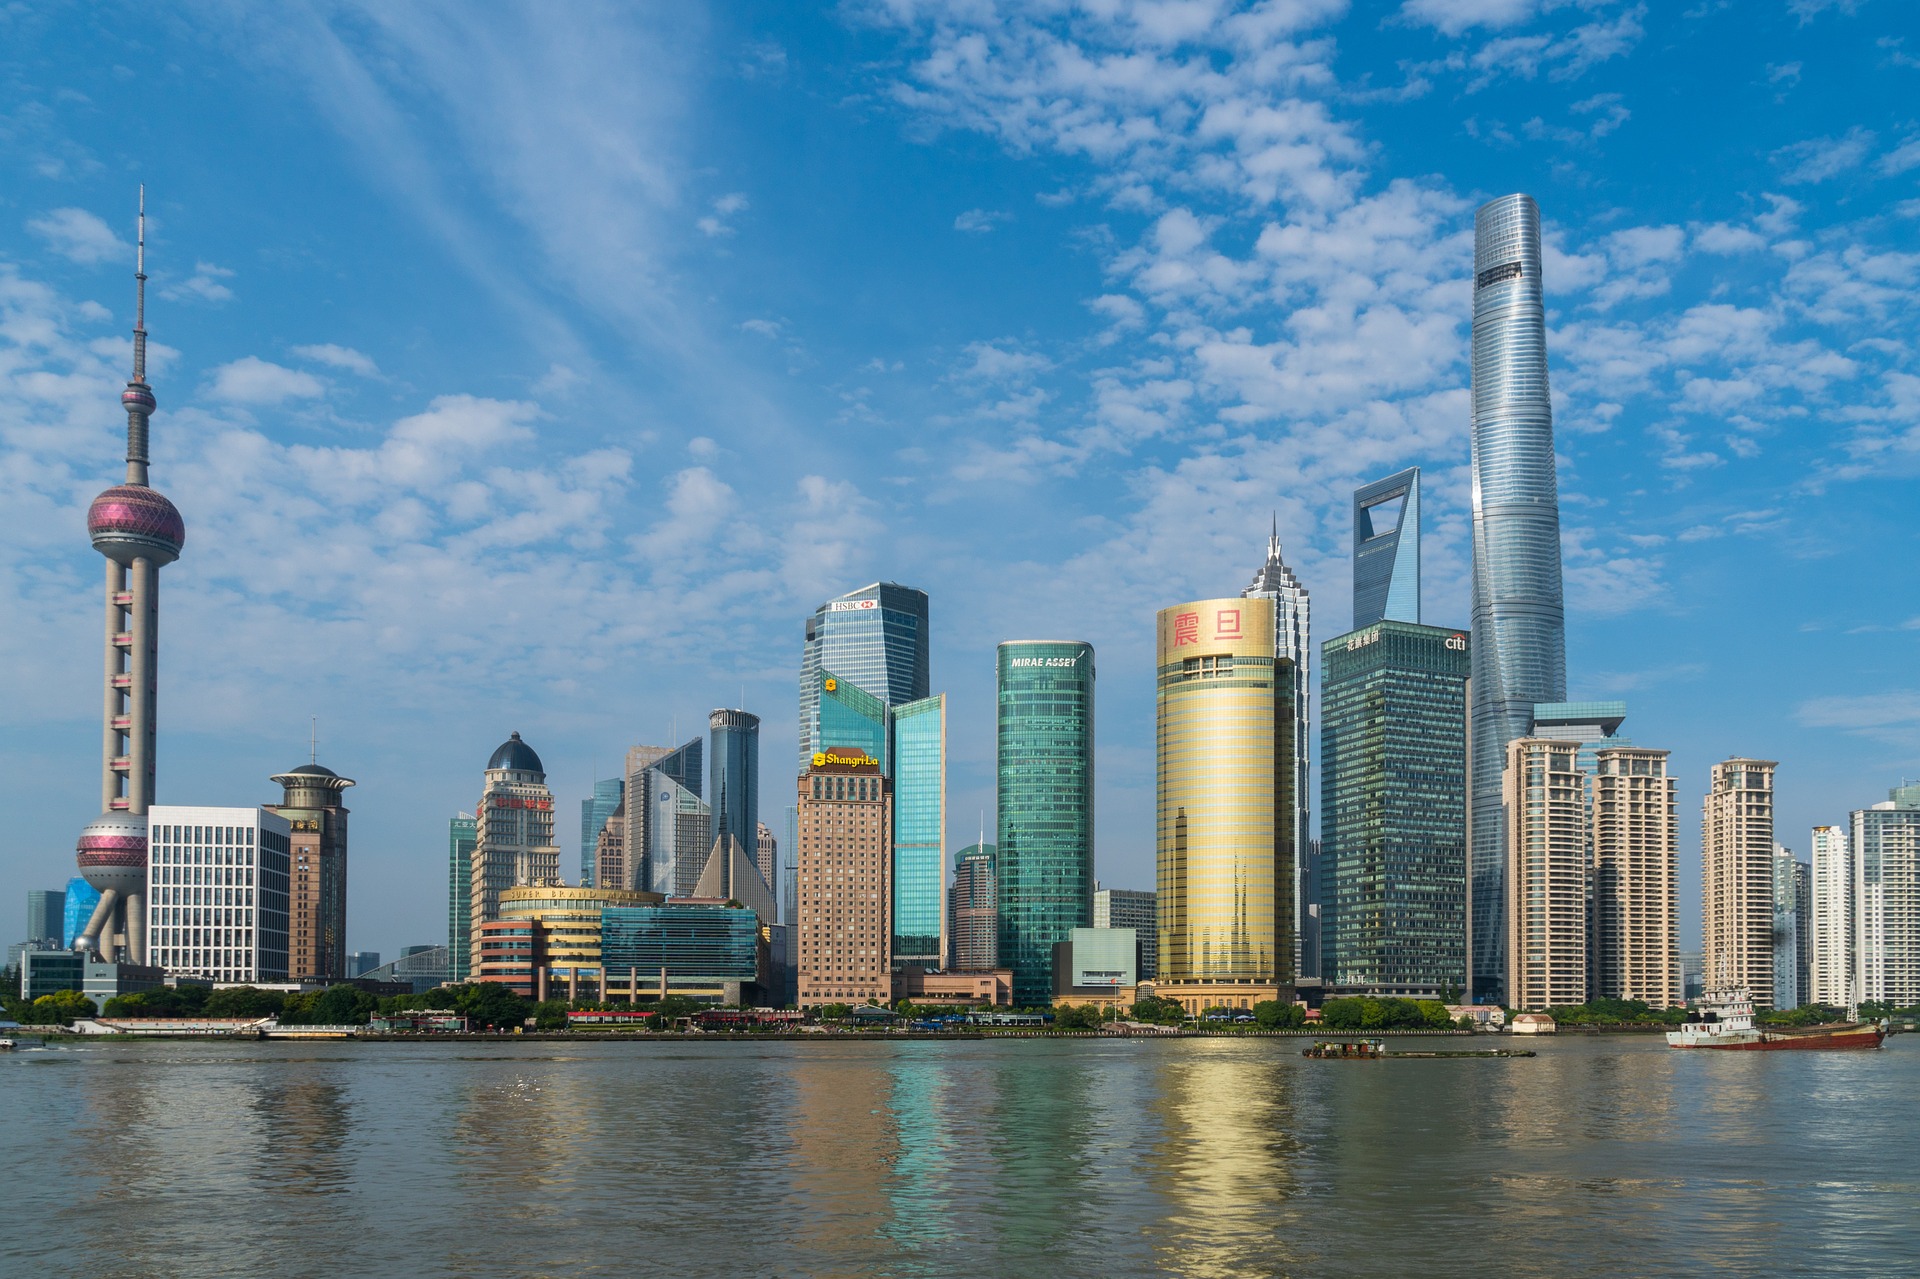 Centre ville de Shanghaï, capitale économique chinoise, ayant connu une urbanisation rapide entre 1987 et 2013. (c)Pixabay License